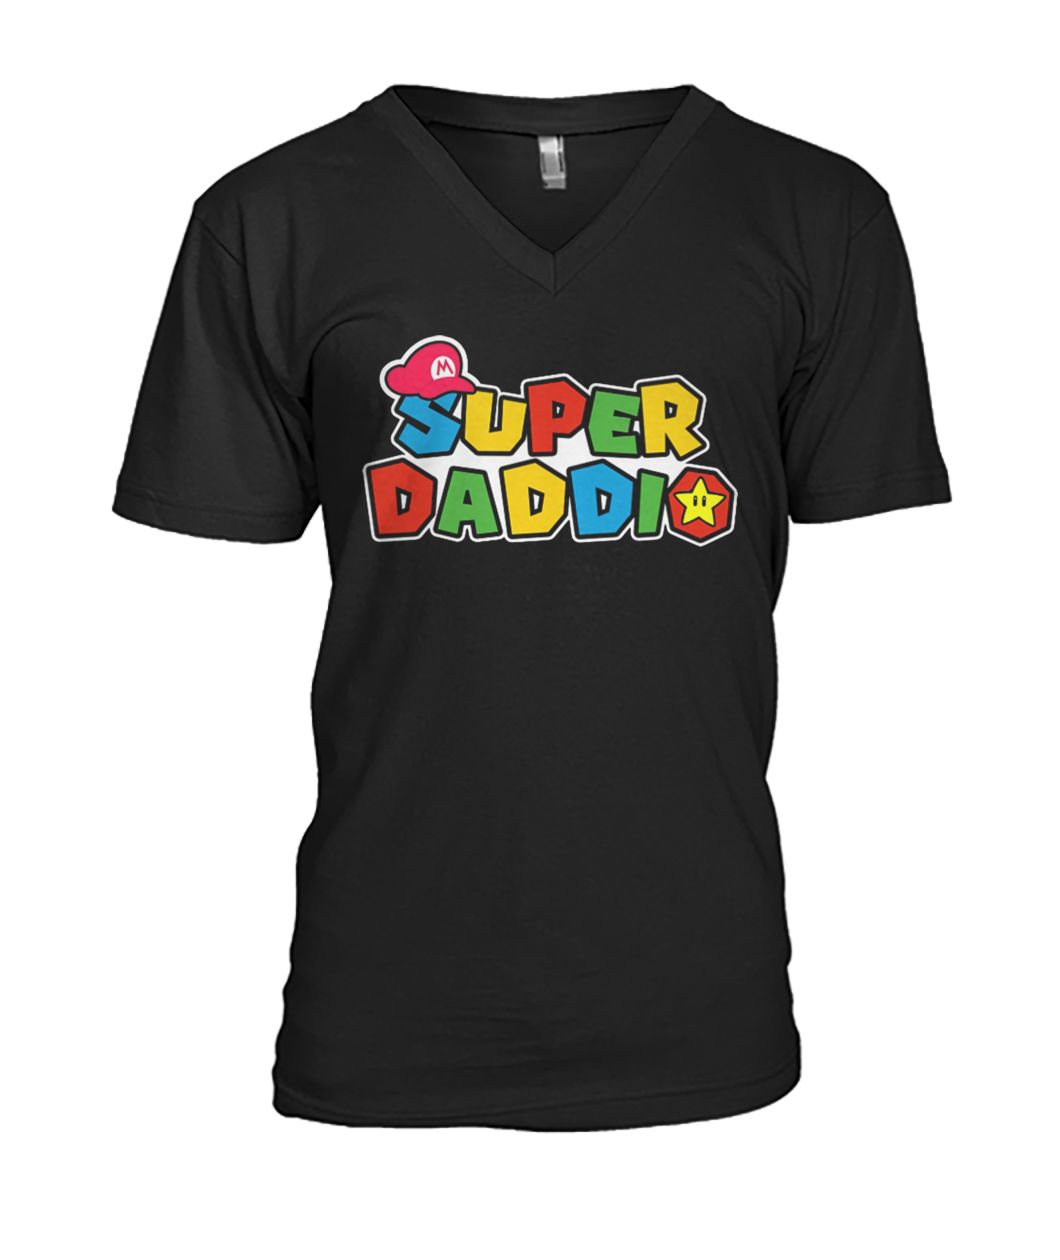 Mario dad super daddio mens v-neck